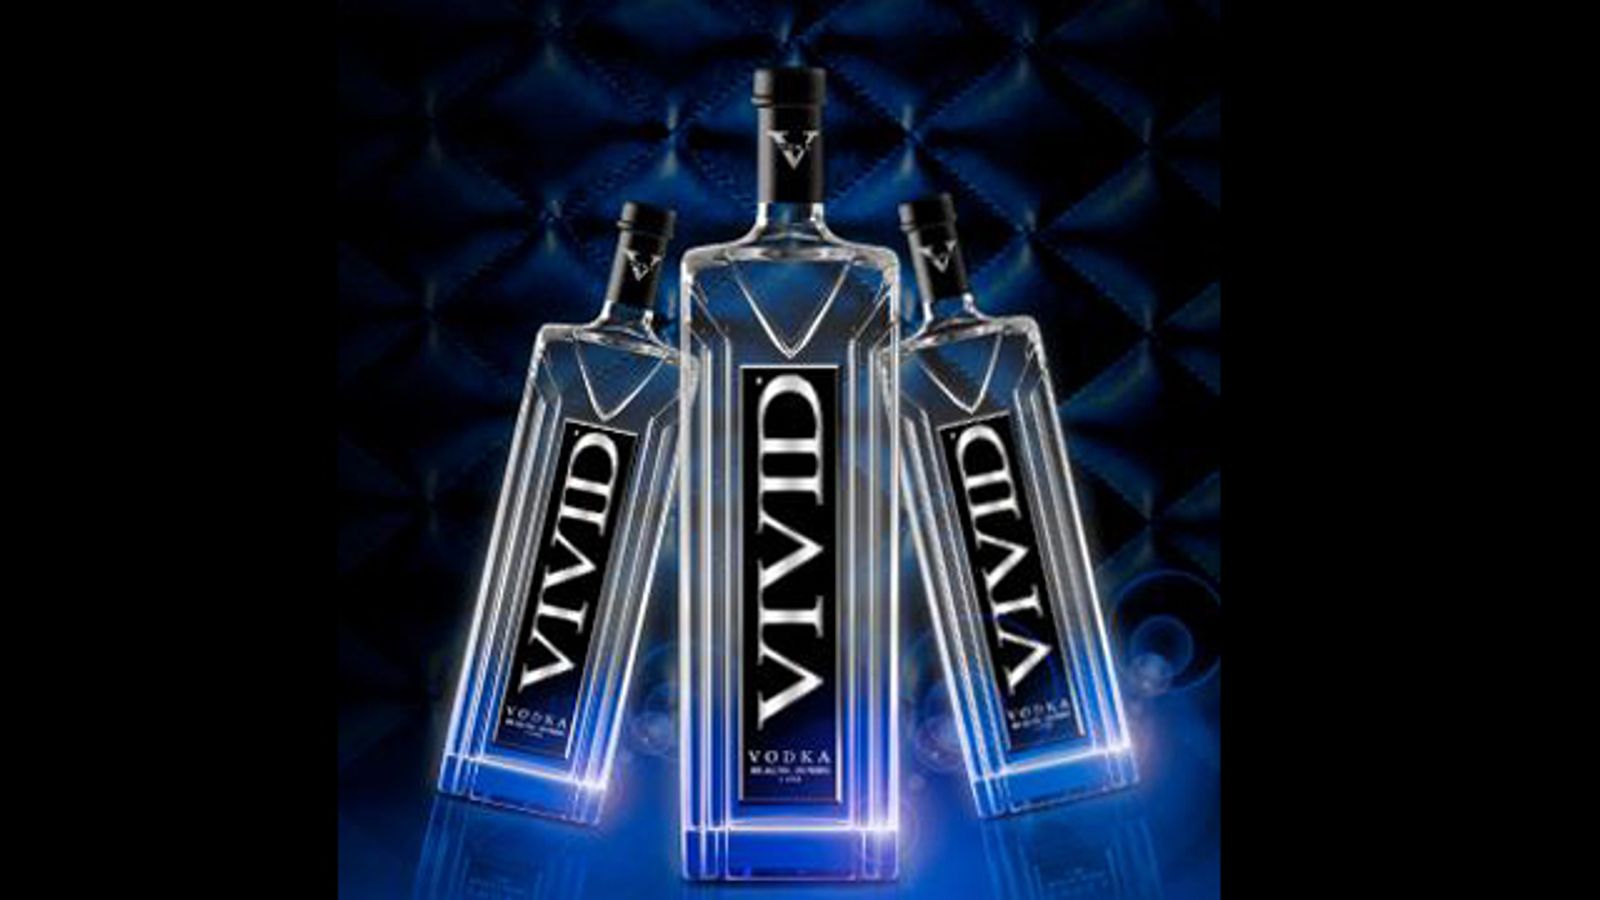 White Star Marketing Debuts Vivid Vodka